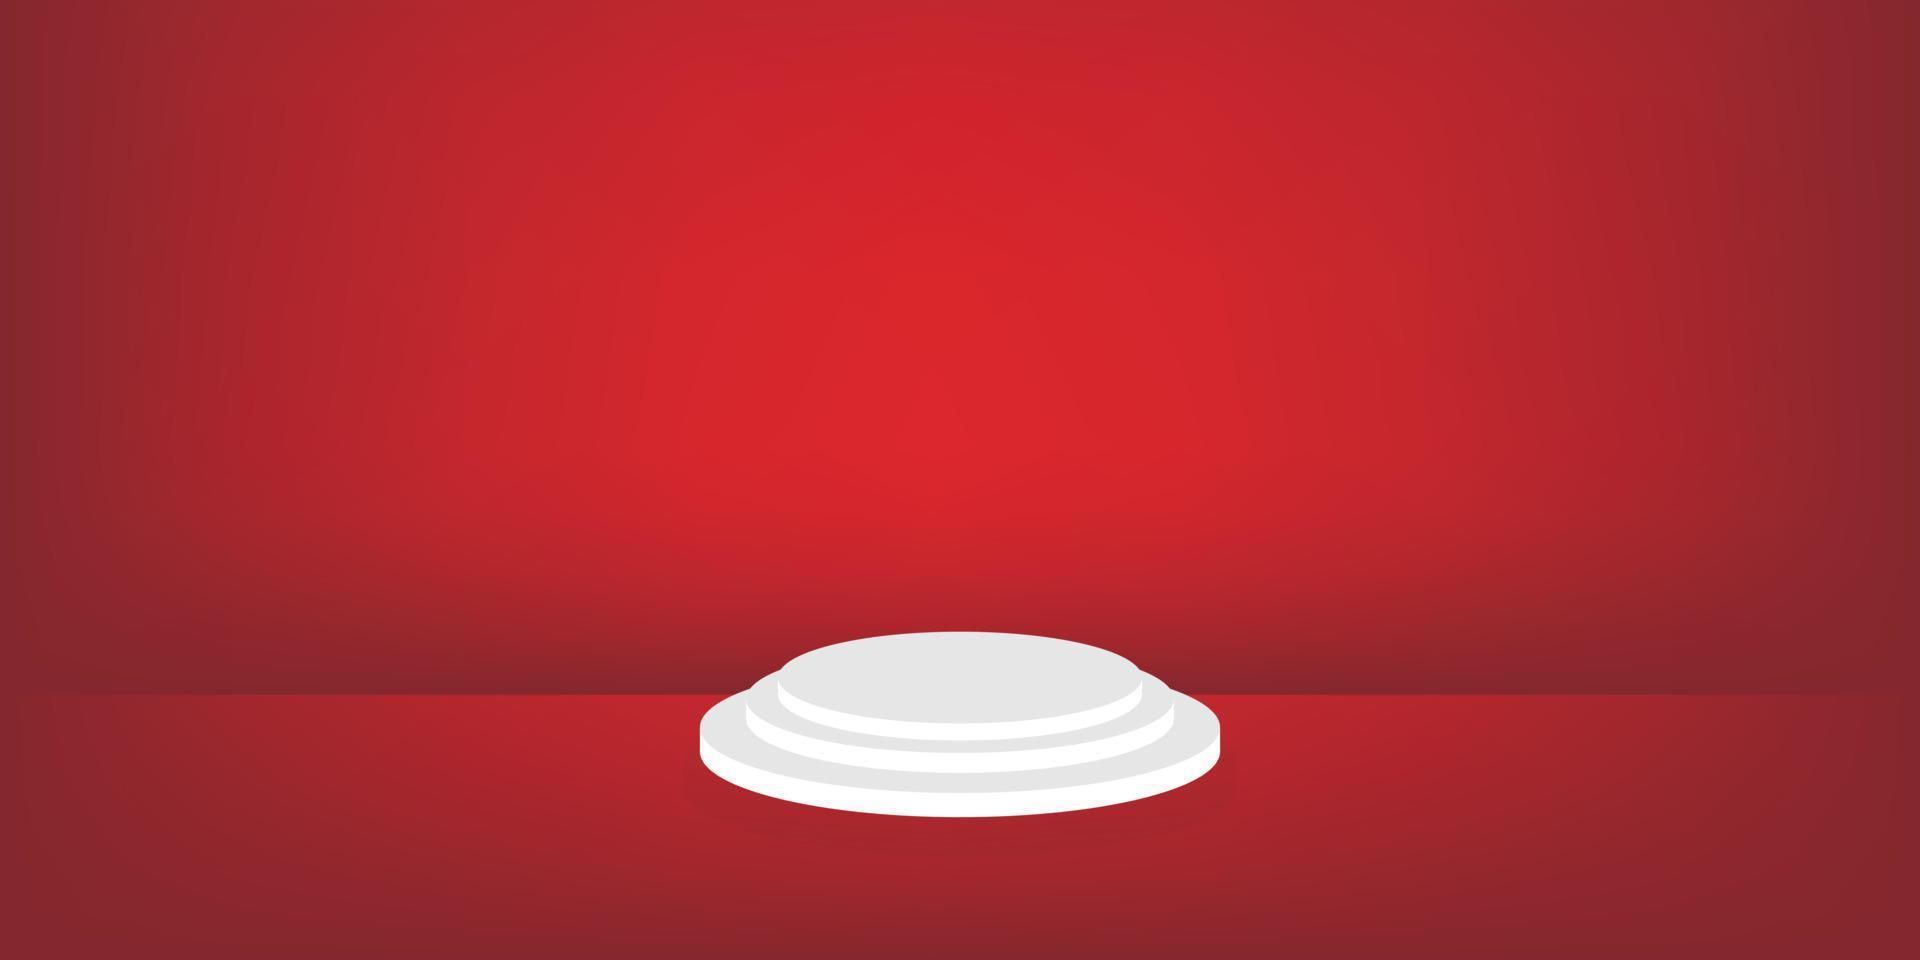 escenario rojo con un podio blanco para la colocación de productos. fondo de espacio vacío de banner publicitario vector